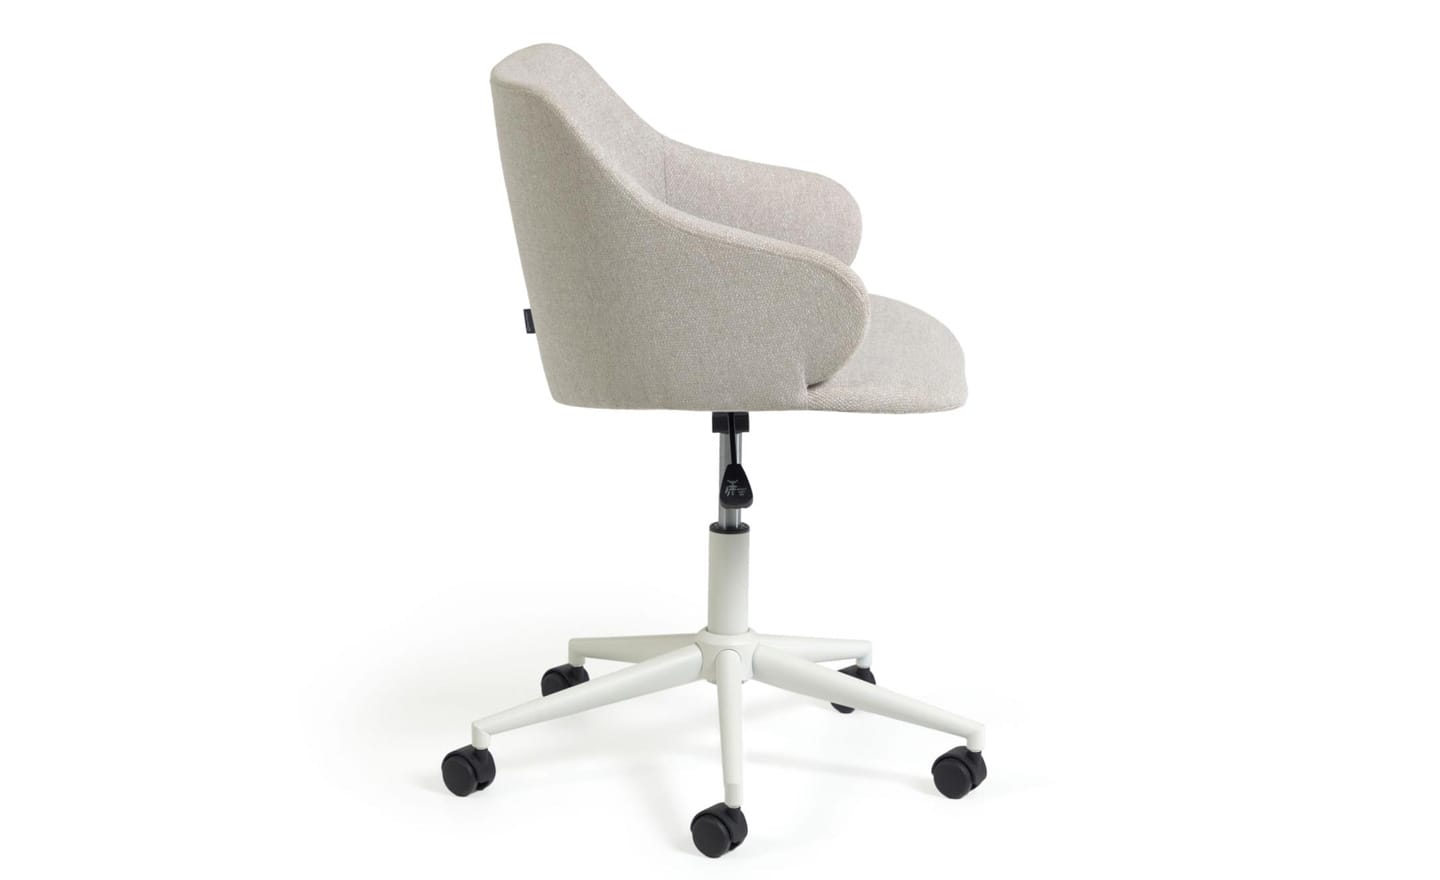 Cadeira de Escritório Einara Cinza Claro - CC2261GR39. Conforto e estilo em uma cadeira giratória com assento acolchoado e regulagem de altura. Moveistore